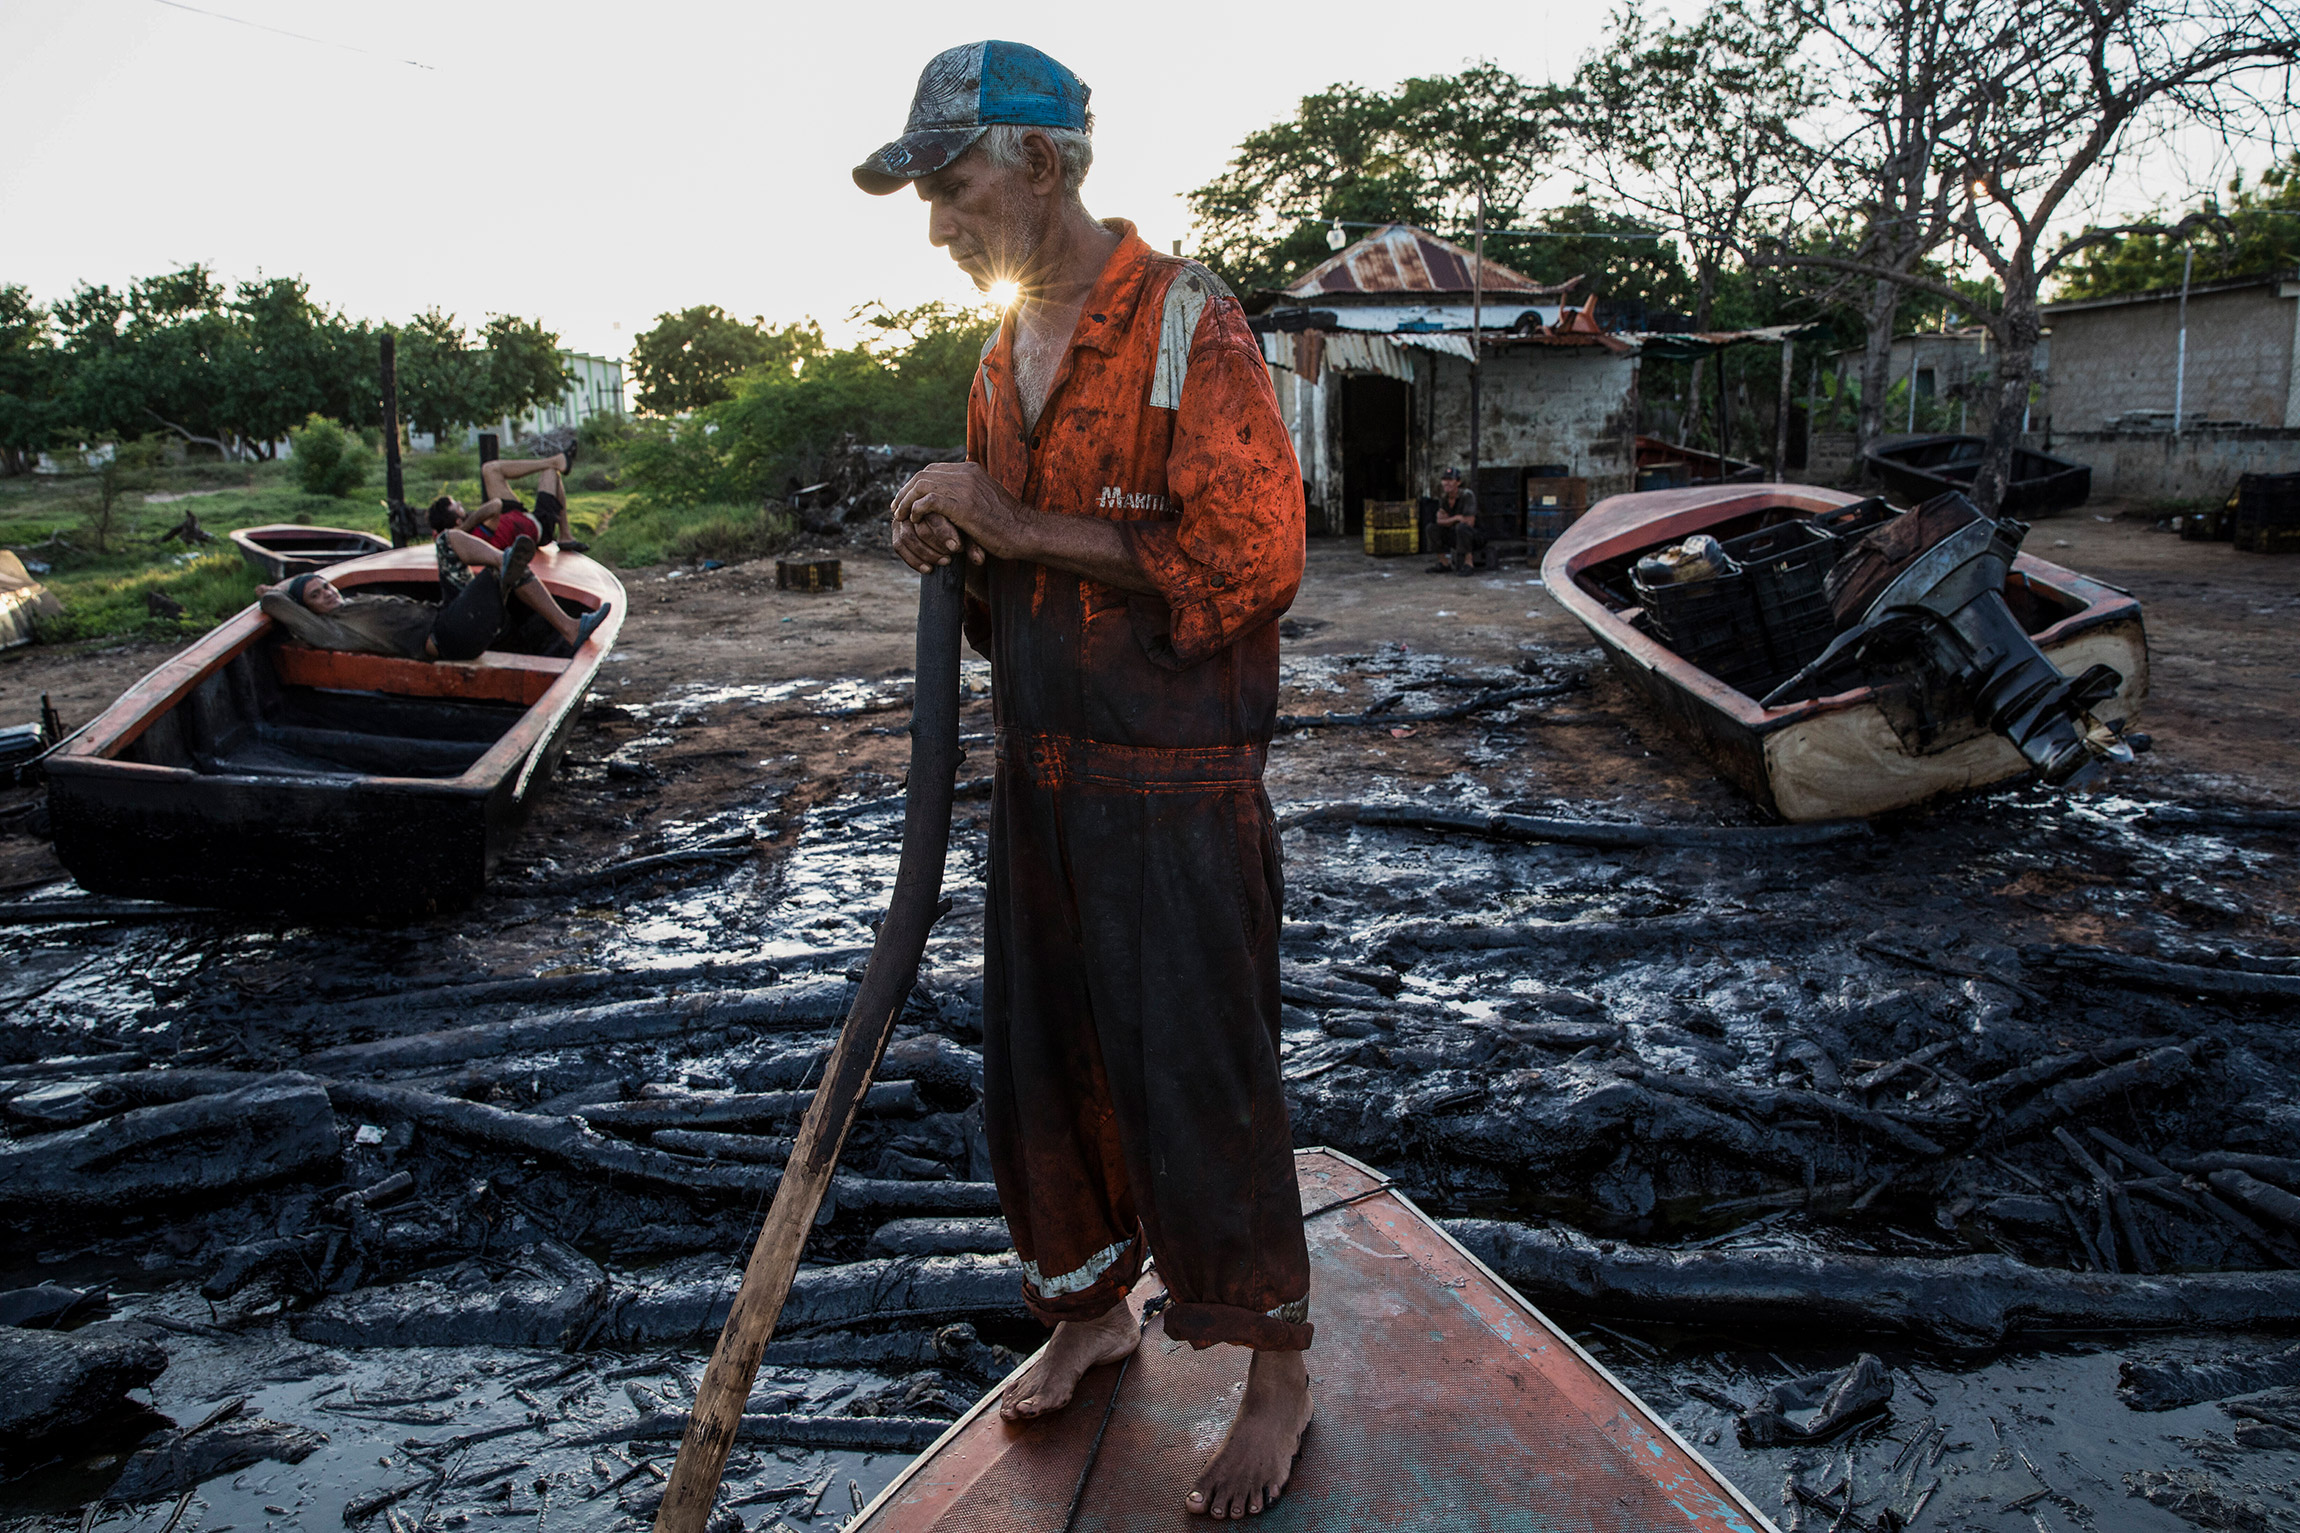 Сегодня озеро страдает от постоянно разливающейся нефти. По словам местных жителей, это началось еще при бывшем президенте Уго Чавесе. По мере того&nbsp;как нефтяники бросали месторождения, оборудование для перекачки нефти ржавело и приходило в упадок.

&nbsp;